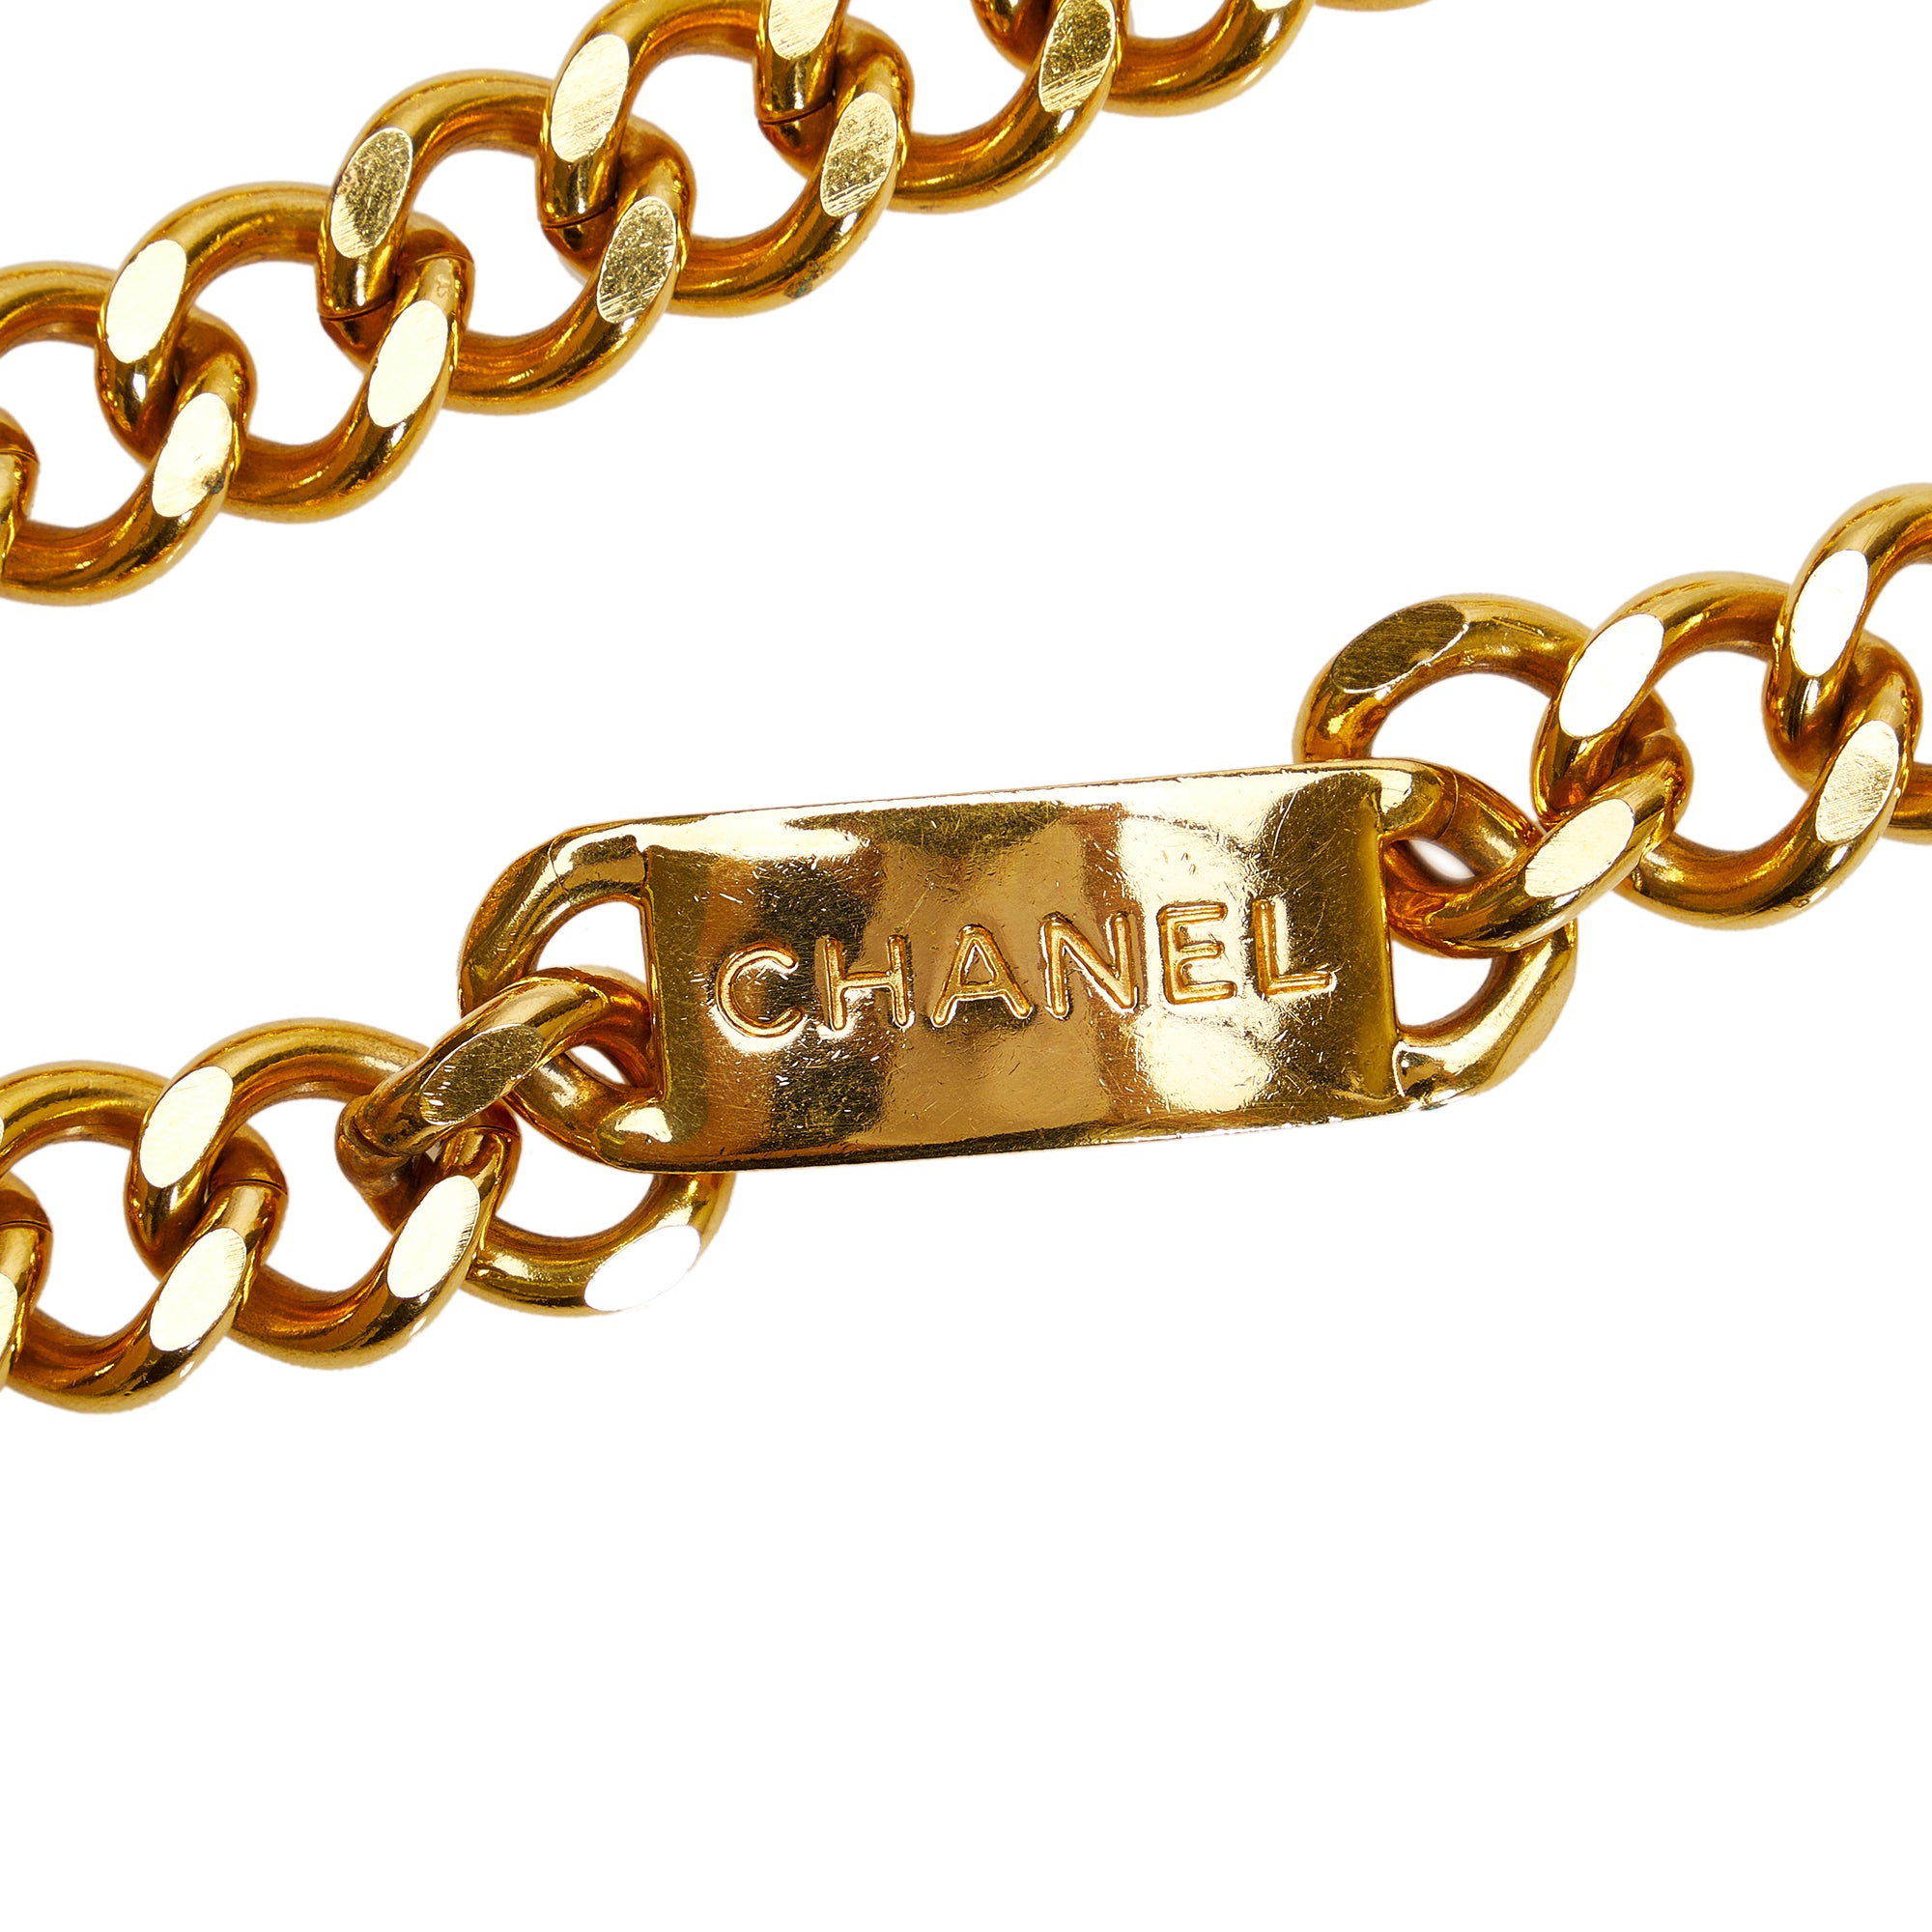 13 Chanel Scarves ideas  chanel scarf, chanel, scarf accessory